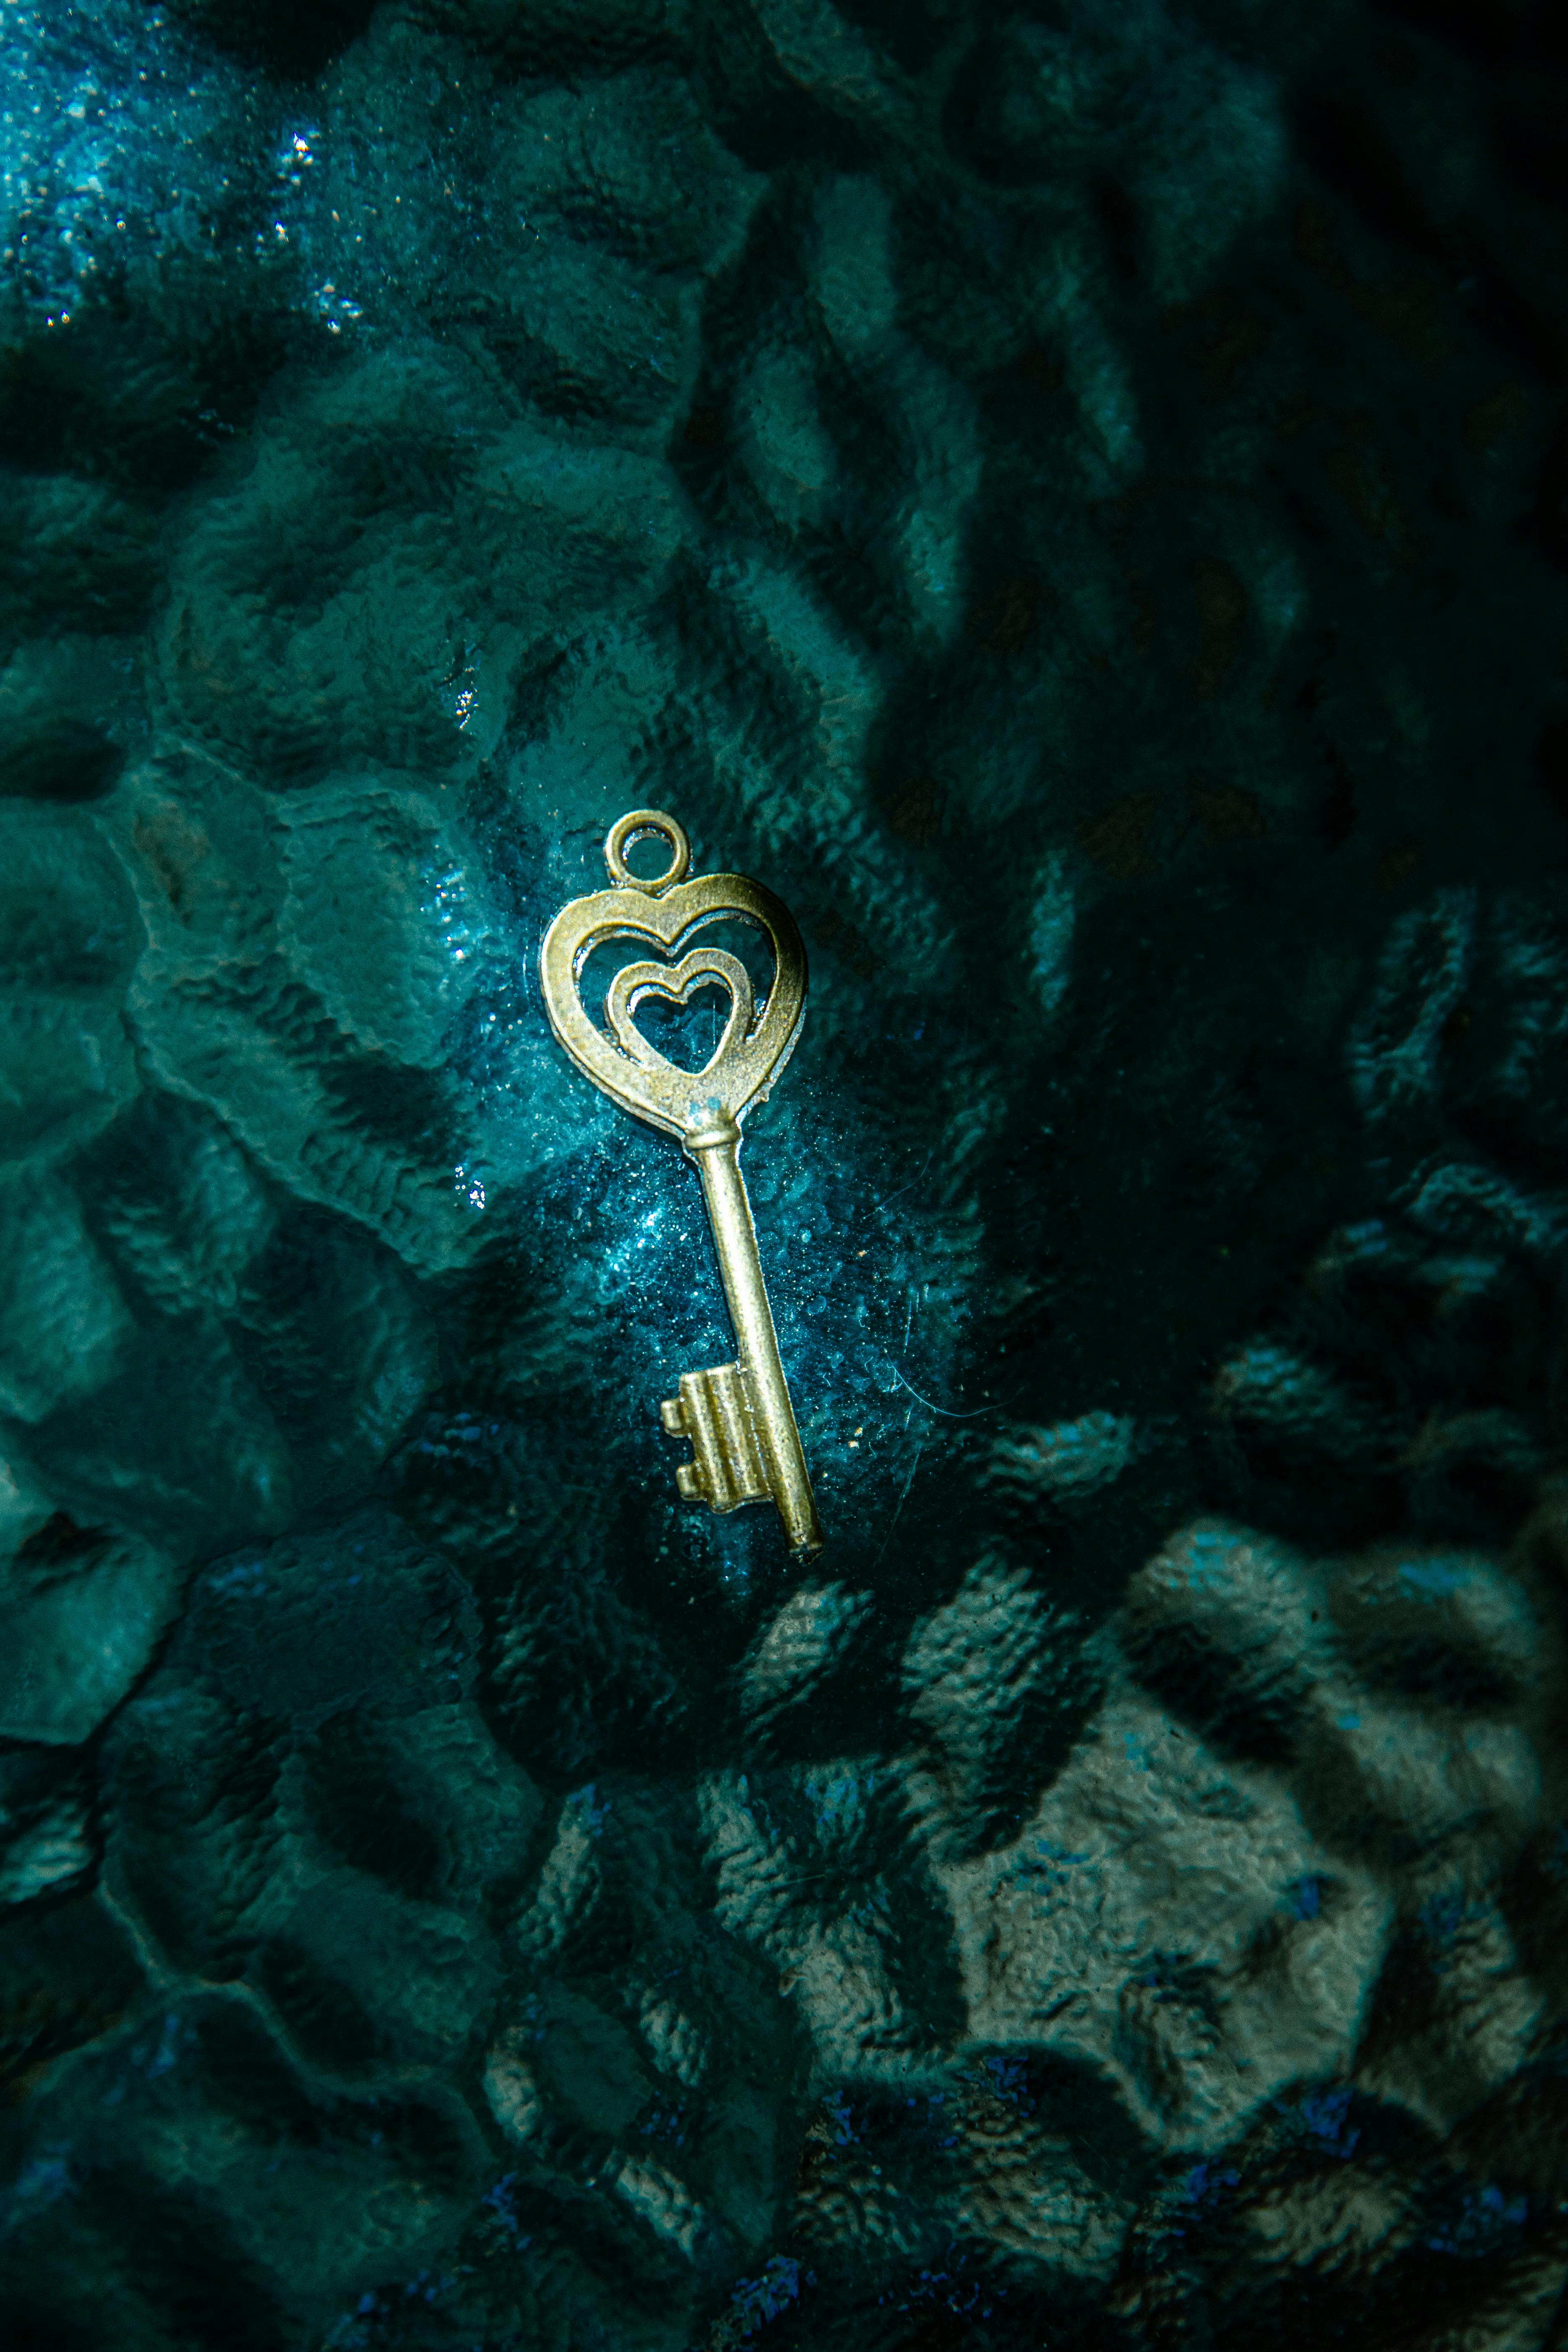 A key | Source: Pexels